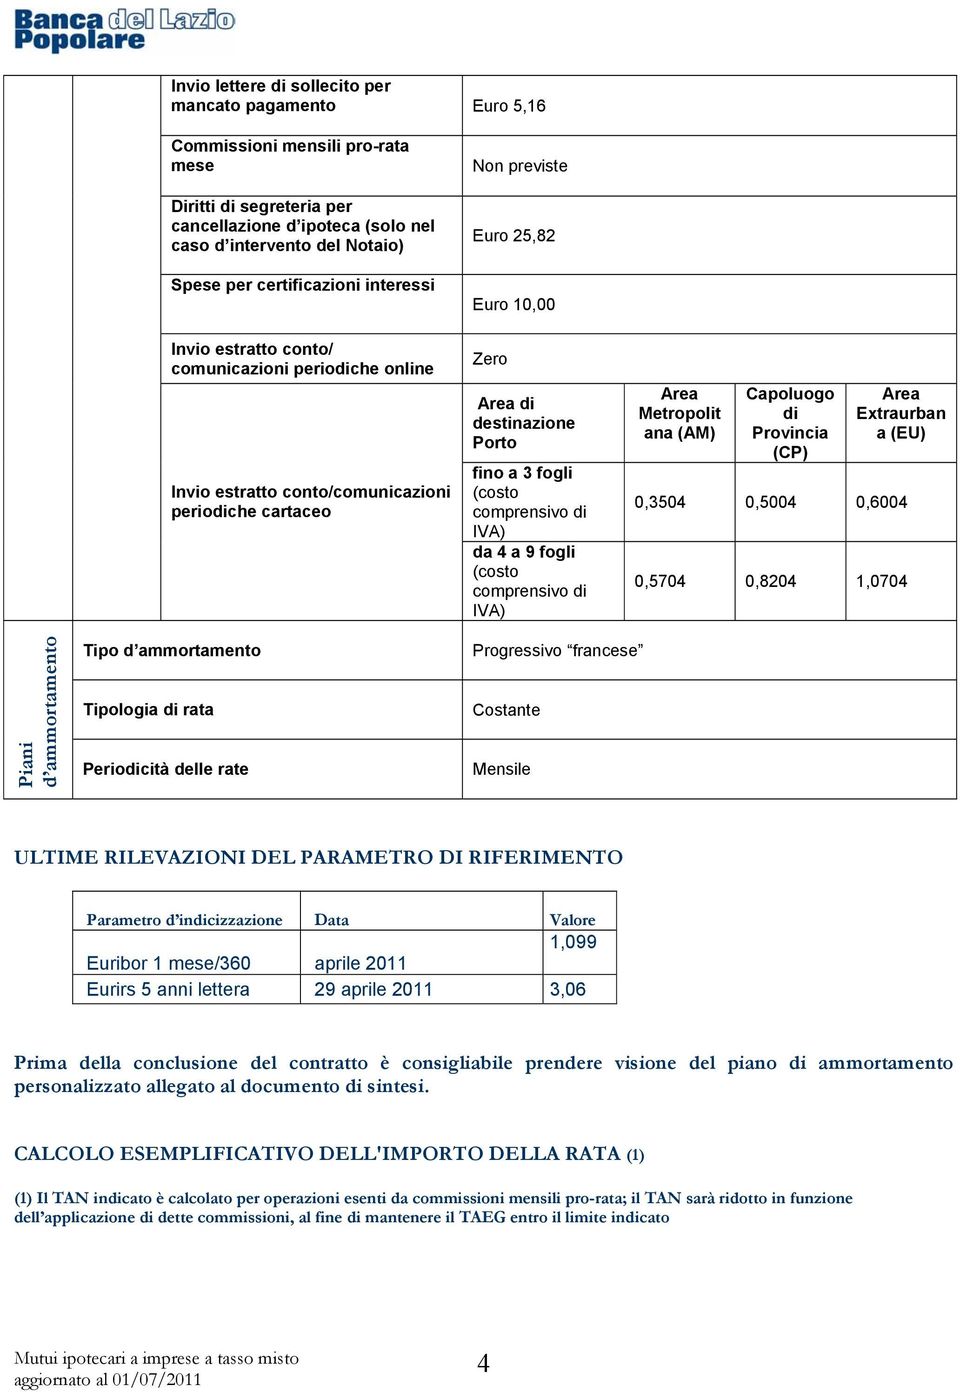 Porto fino a 3 fogli (costo comprensivo di IVA) da 4 a 9 fogli (costo comprensivo di IVA) Area Metropolit ana (AM) Capoluogo di Provincia (CP) Area Extraurban a (EU) 0,3504 0,5004 0,6004 0,5704